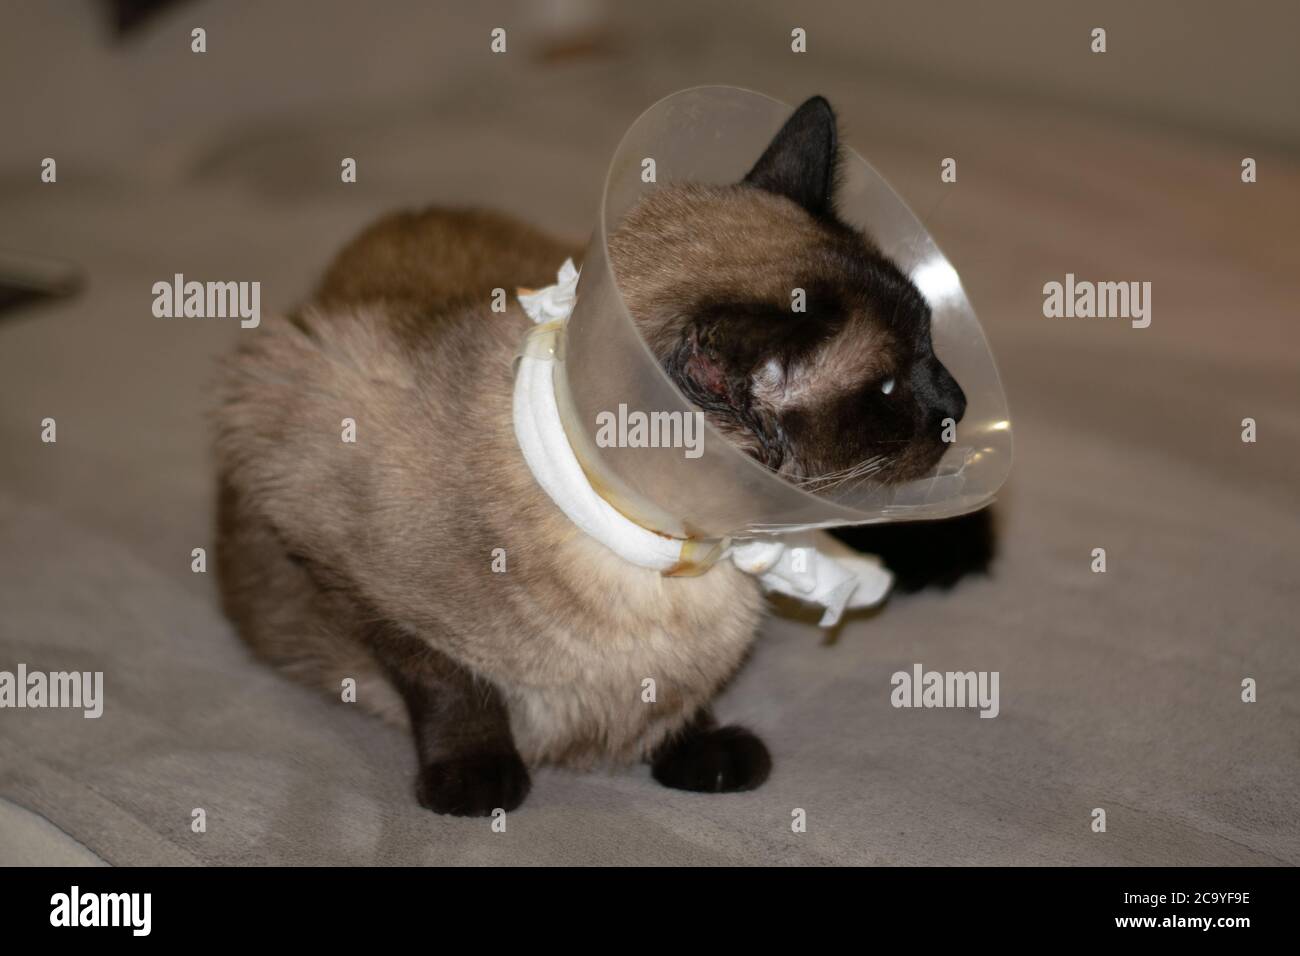 Siam Katze Genesung nach dem Gehen zum Tierarzt, weil pf ein Katzenkampf. Die Katze erholt sich nach medizinischen oder zirurgischen Eingriffen. Tierpflege. Stockfoto